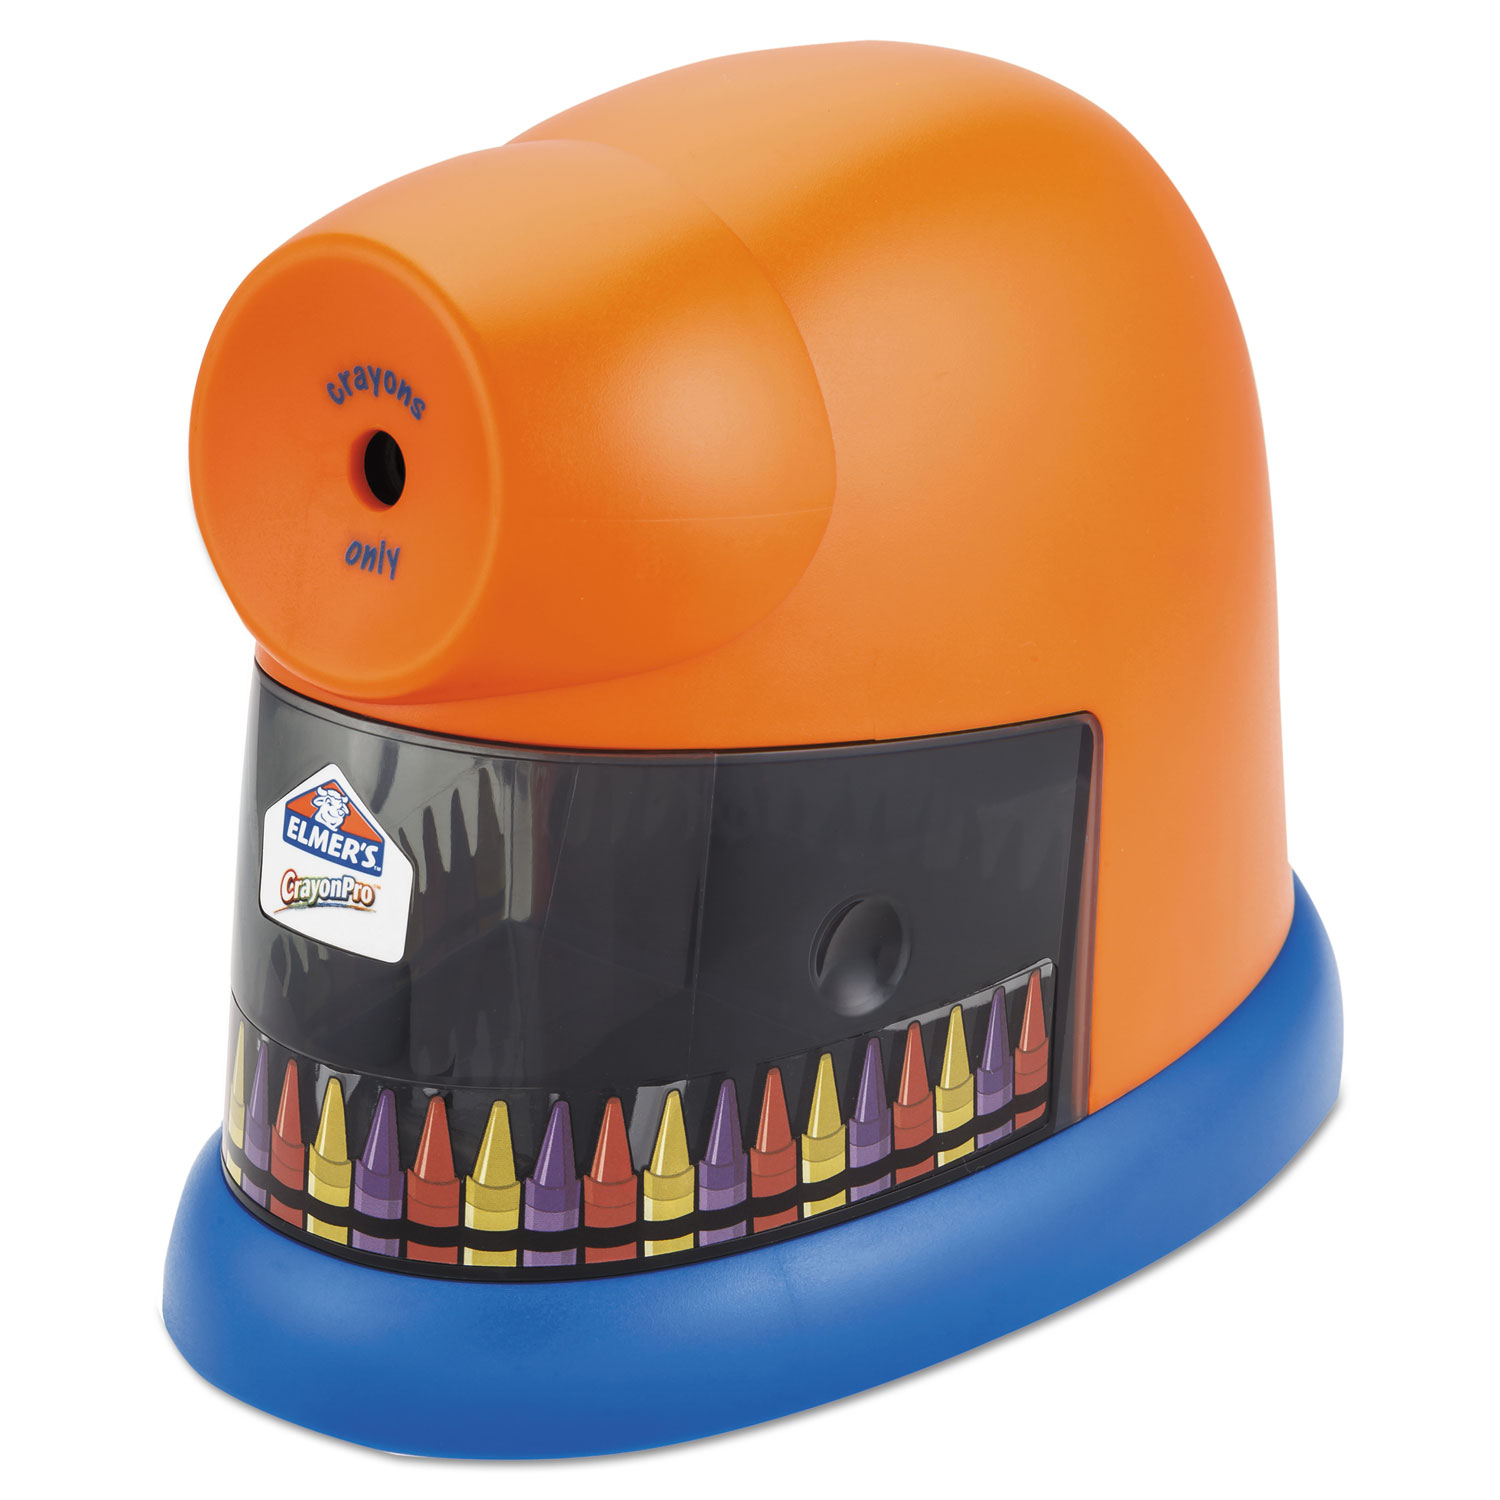 Elmers/X-Acto EPI1680 CrayonPro Electric Crayon Sharpener with Replacable Blade, Orange